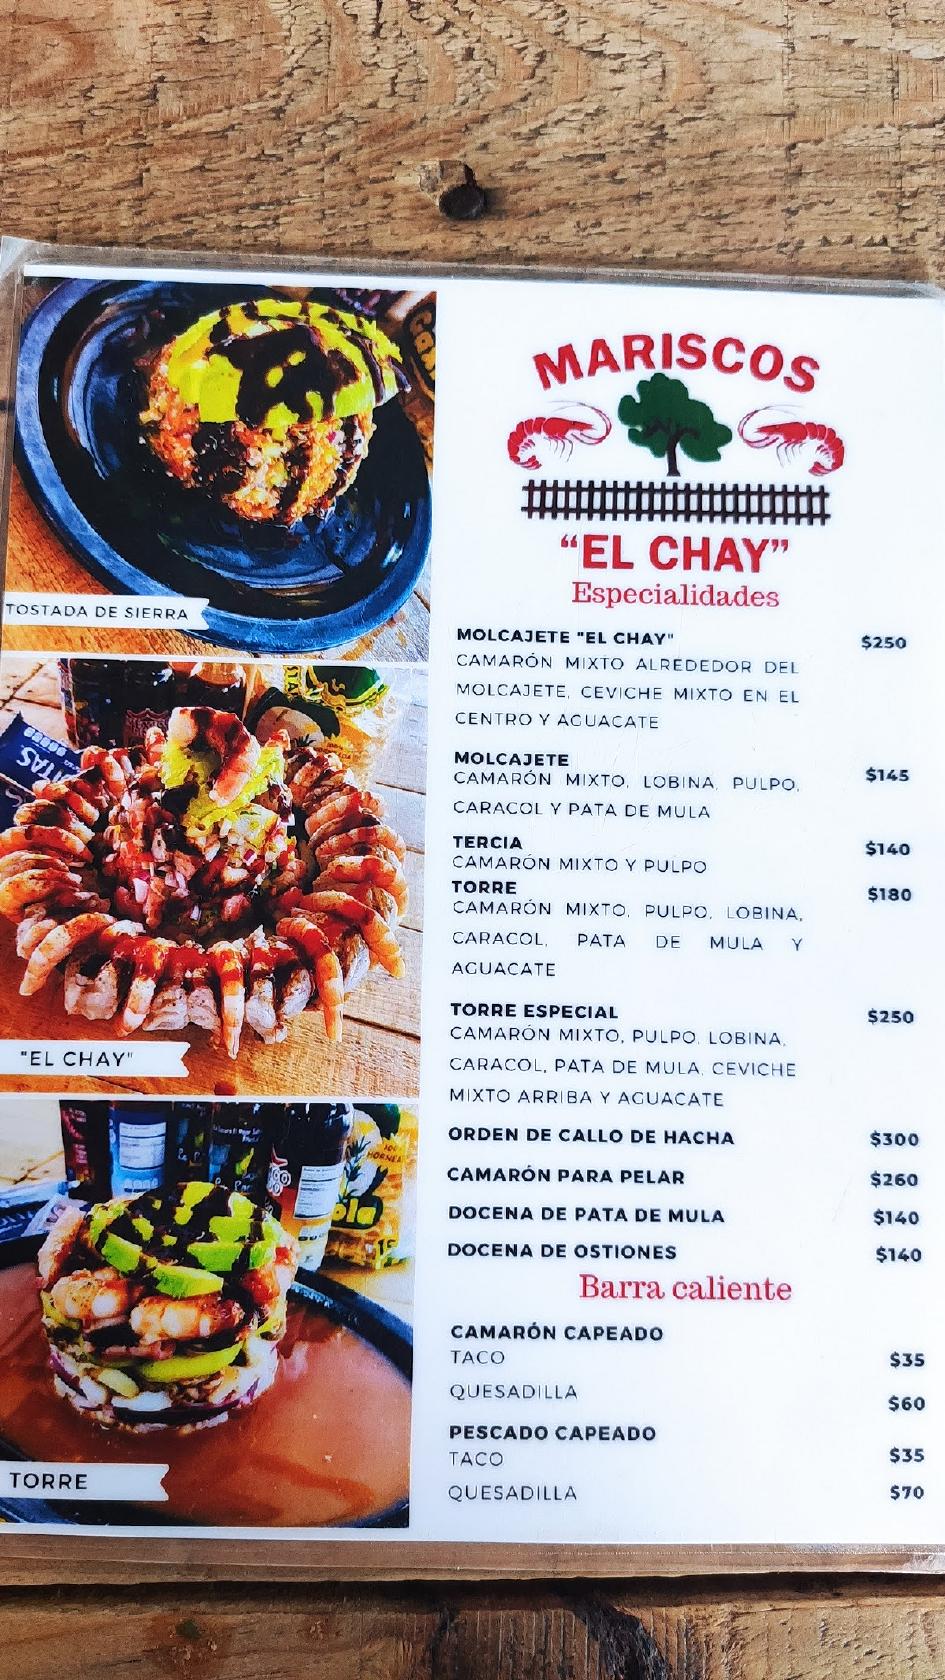 Menu at Mariscos El Chay restaurant, Culiacán, Calle Calz. del Trabajo